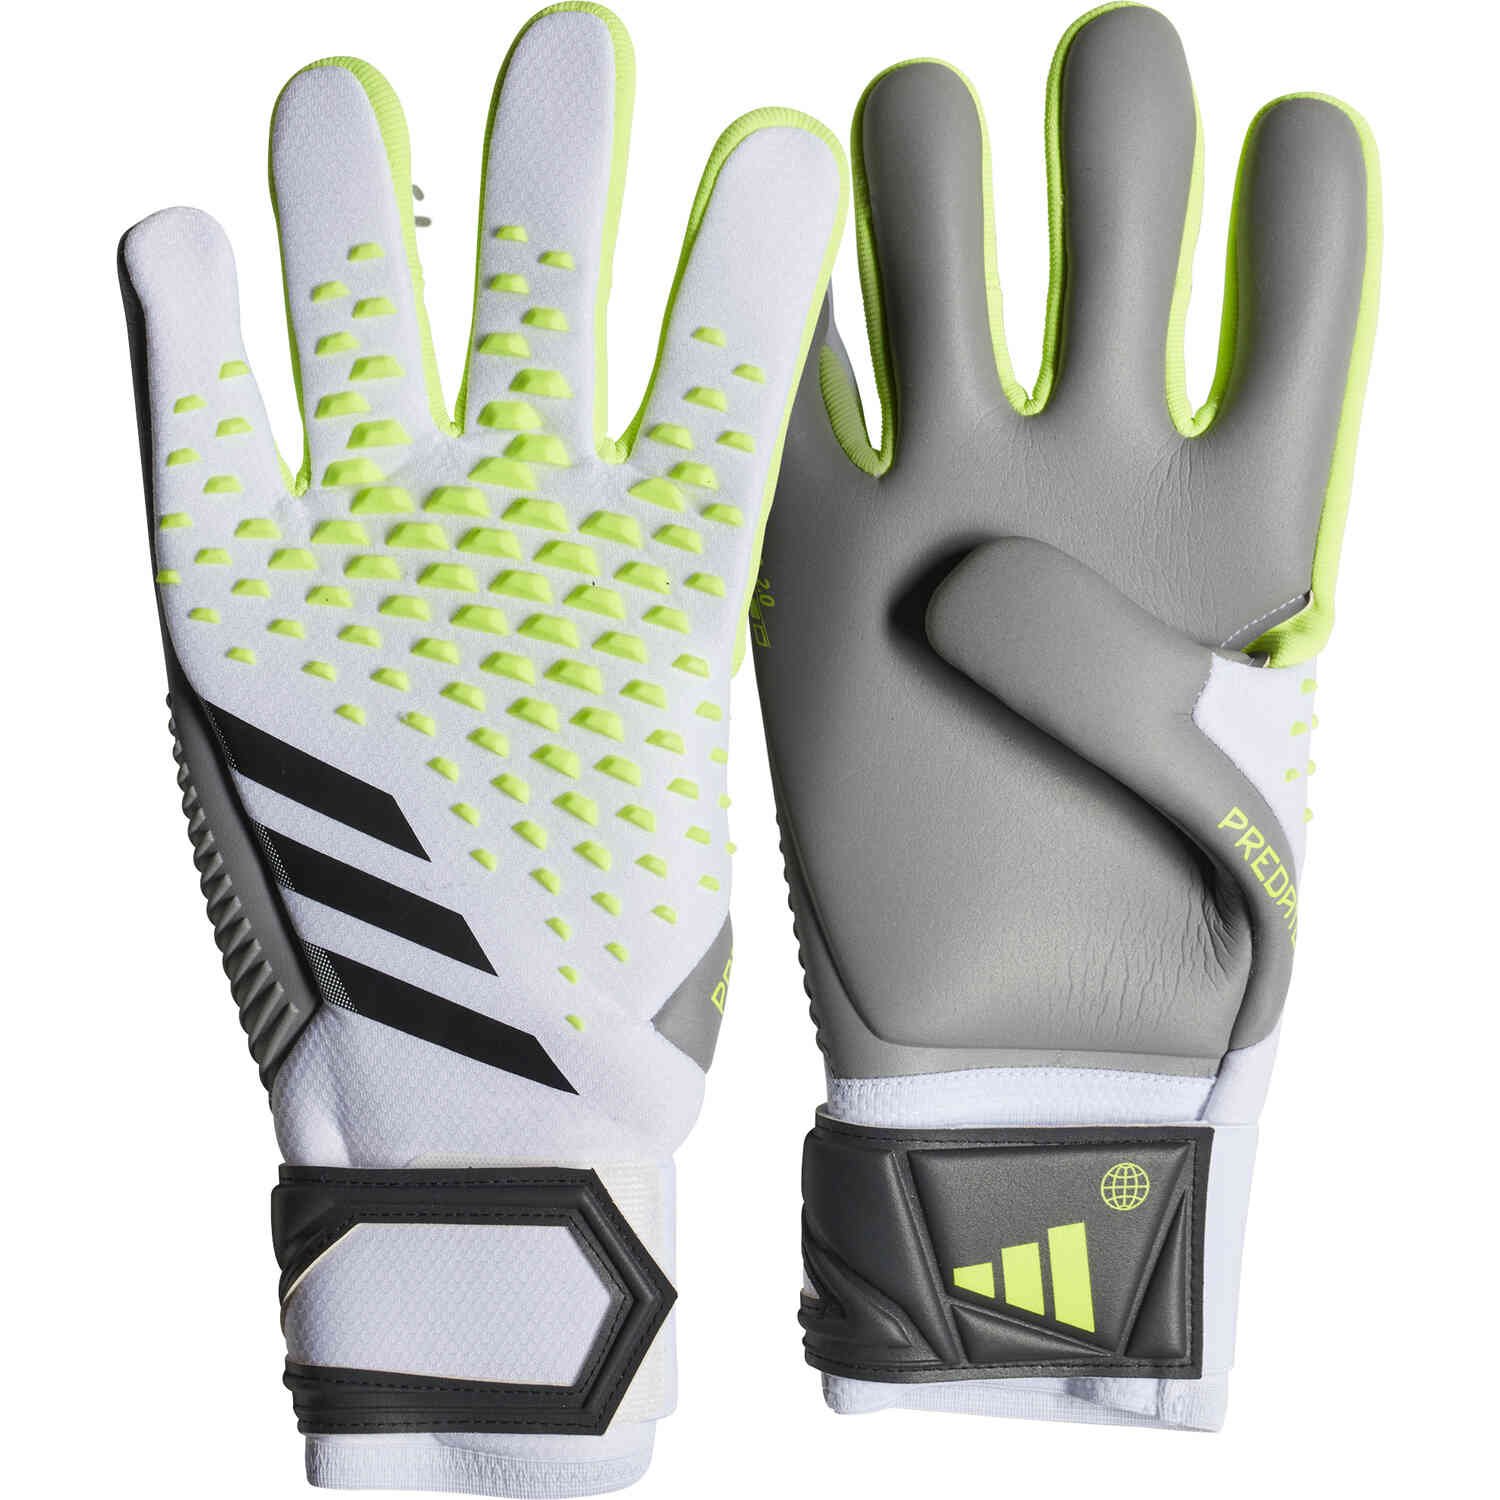 Adidas Predator Match Fingersave Youth Goalkeeper Gloves, White/Lucid Lemon/Black / 7